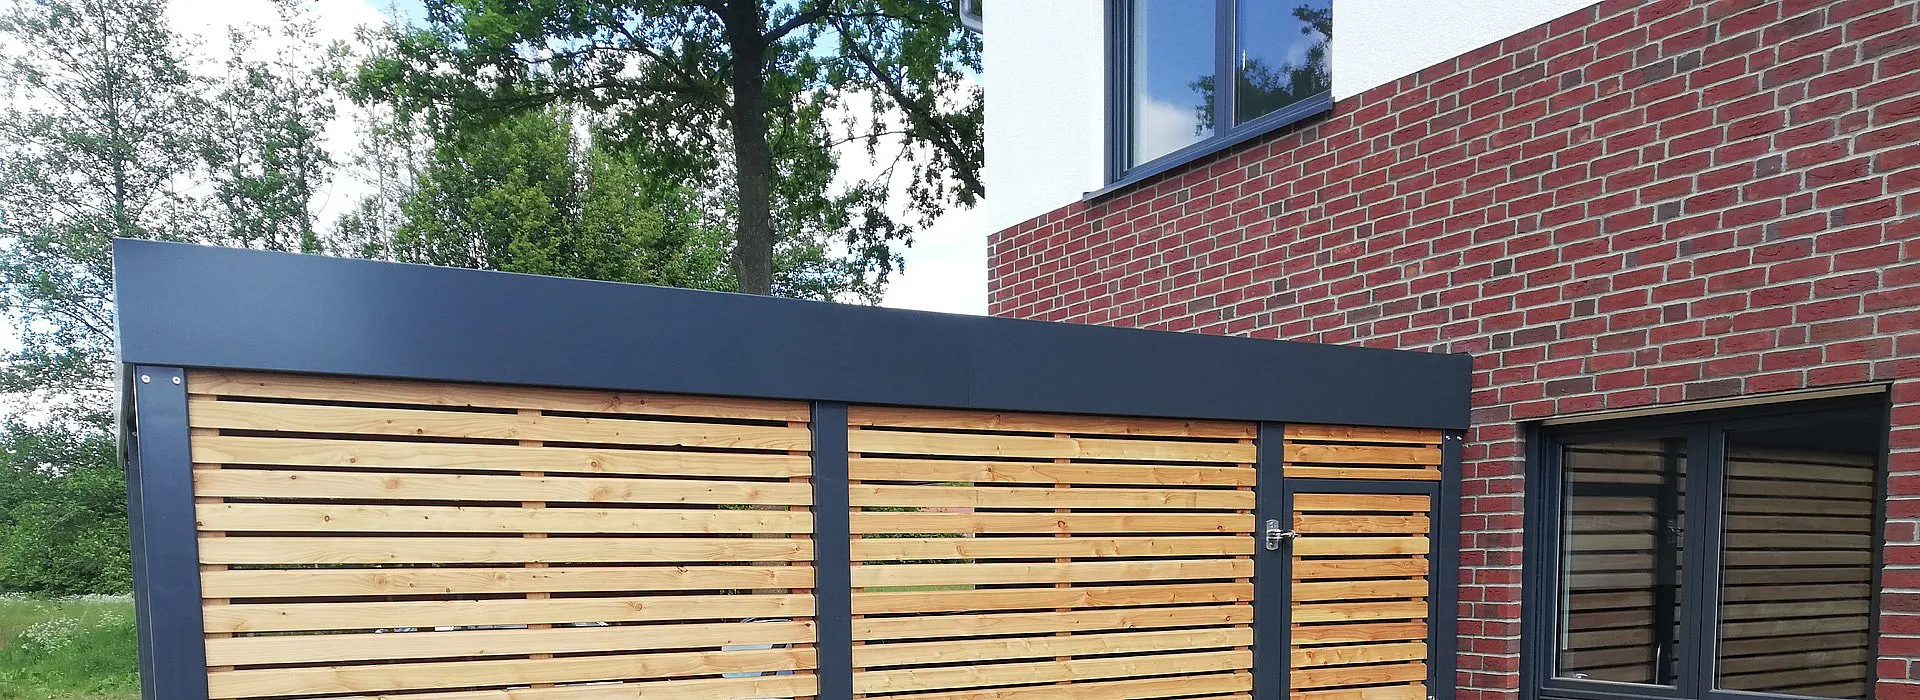 anthrazit farbenes Carport aus Metall und Holz in Einfahrt mit angrenzendem Holzschuppen, Seiteneingang